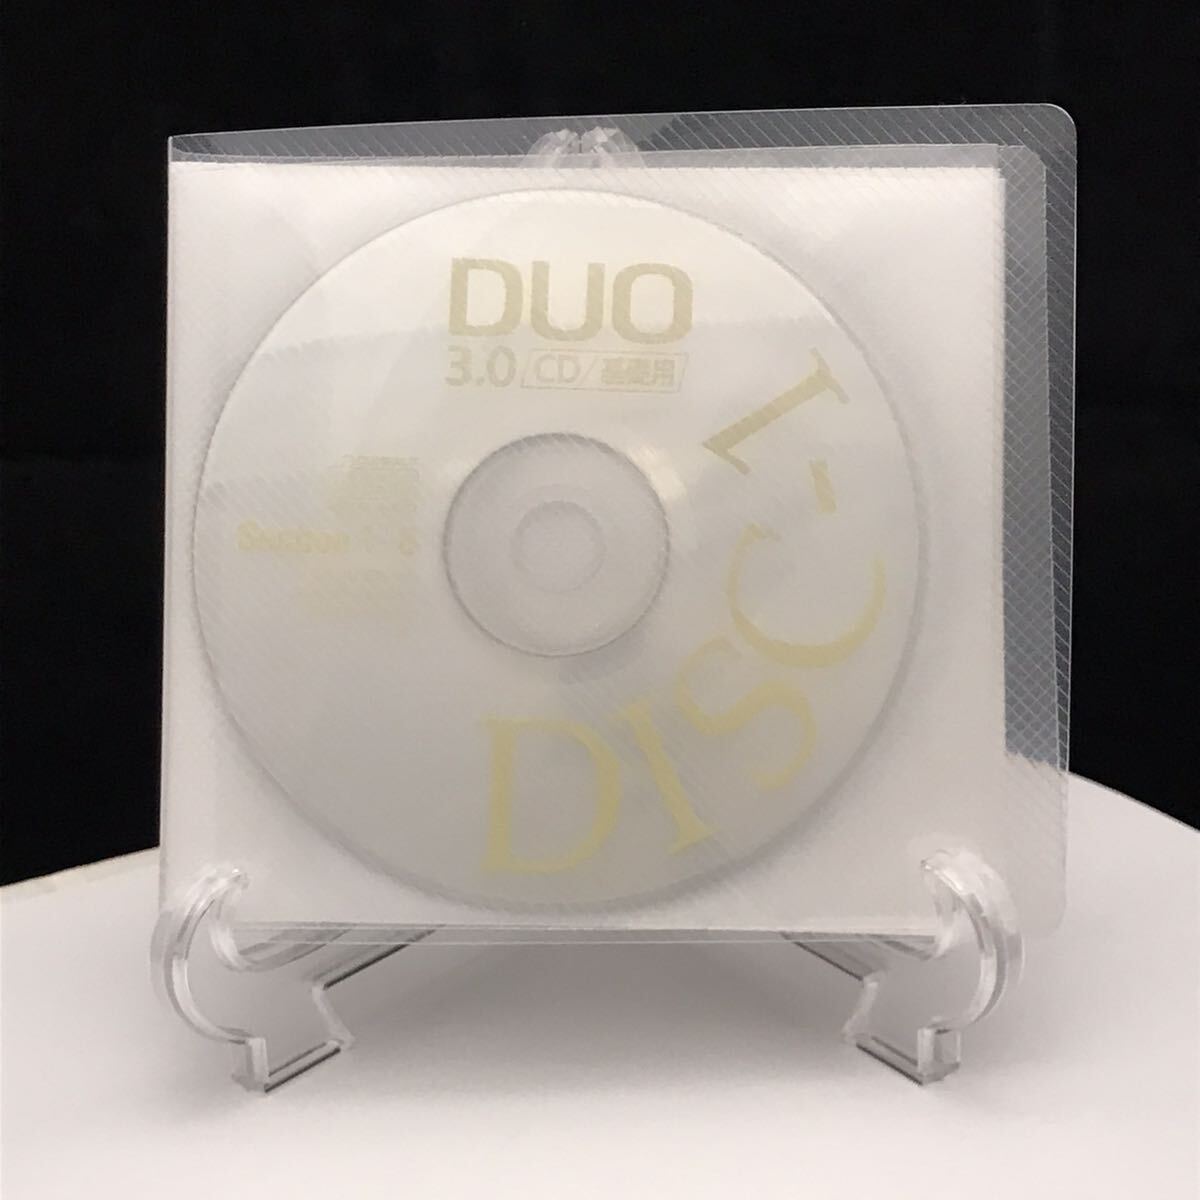 DUO 3.0/CD基礎用 鈴木陽一 【送料無料】の画像2